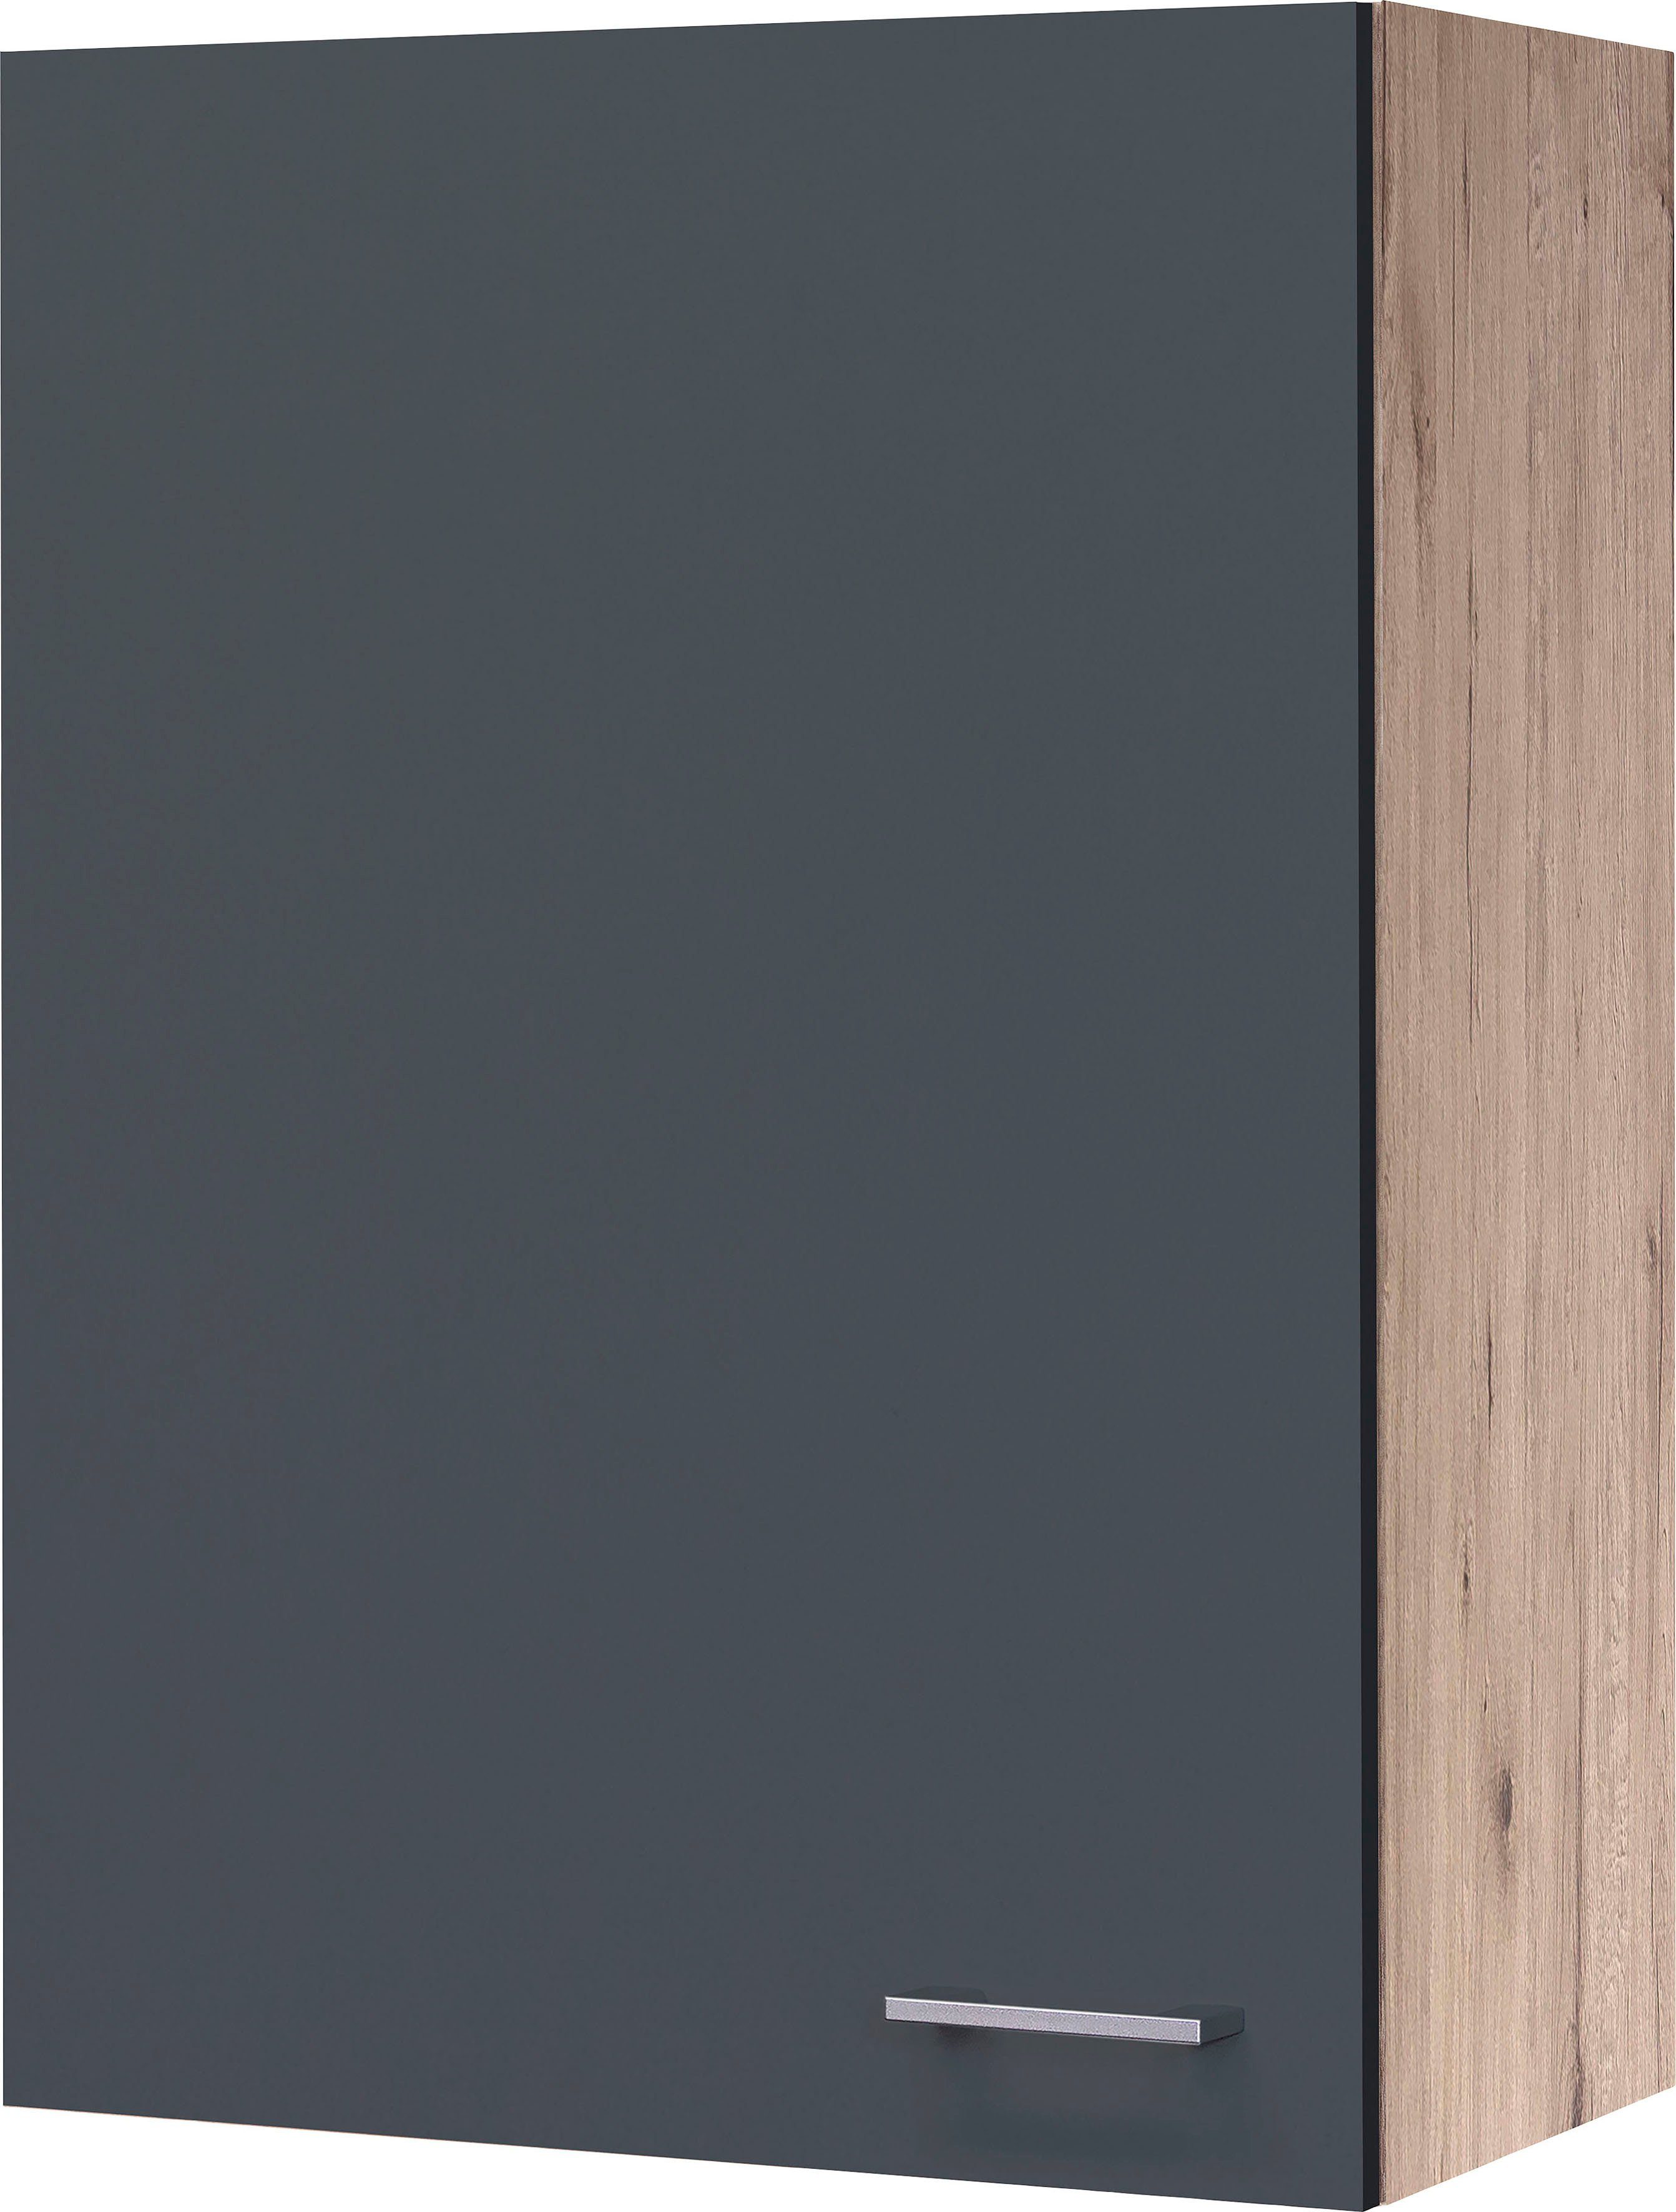 Flex-Well Hängeschrank Morena (B x H x T) 60 x 89 x 32 cm, für viel Stauraum | Hängeschränke